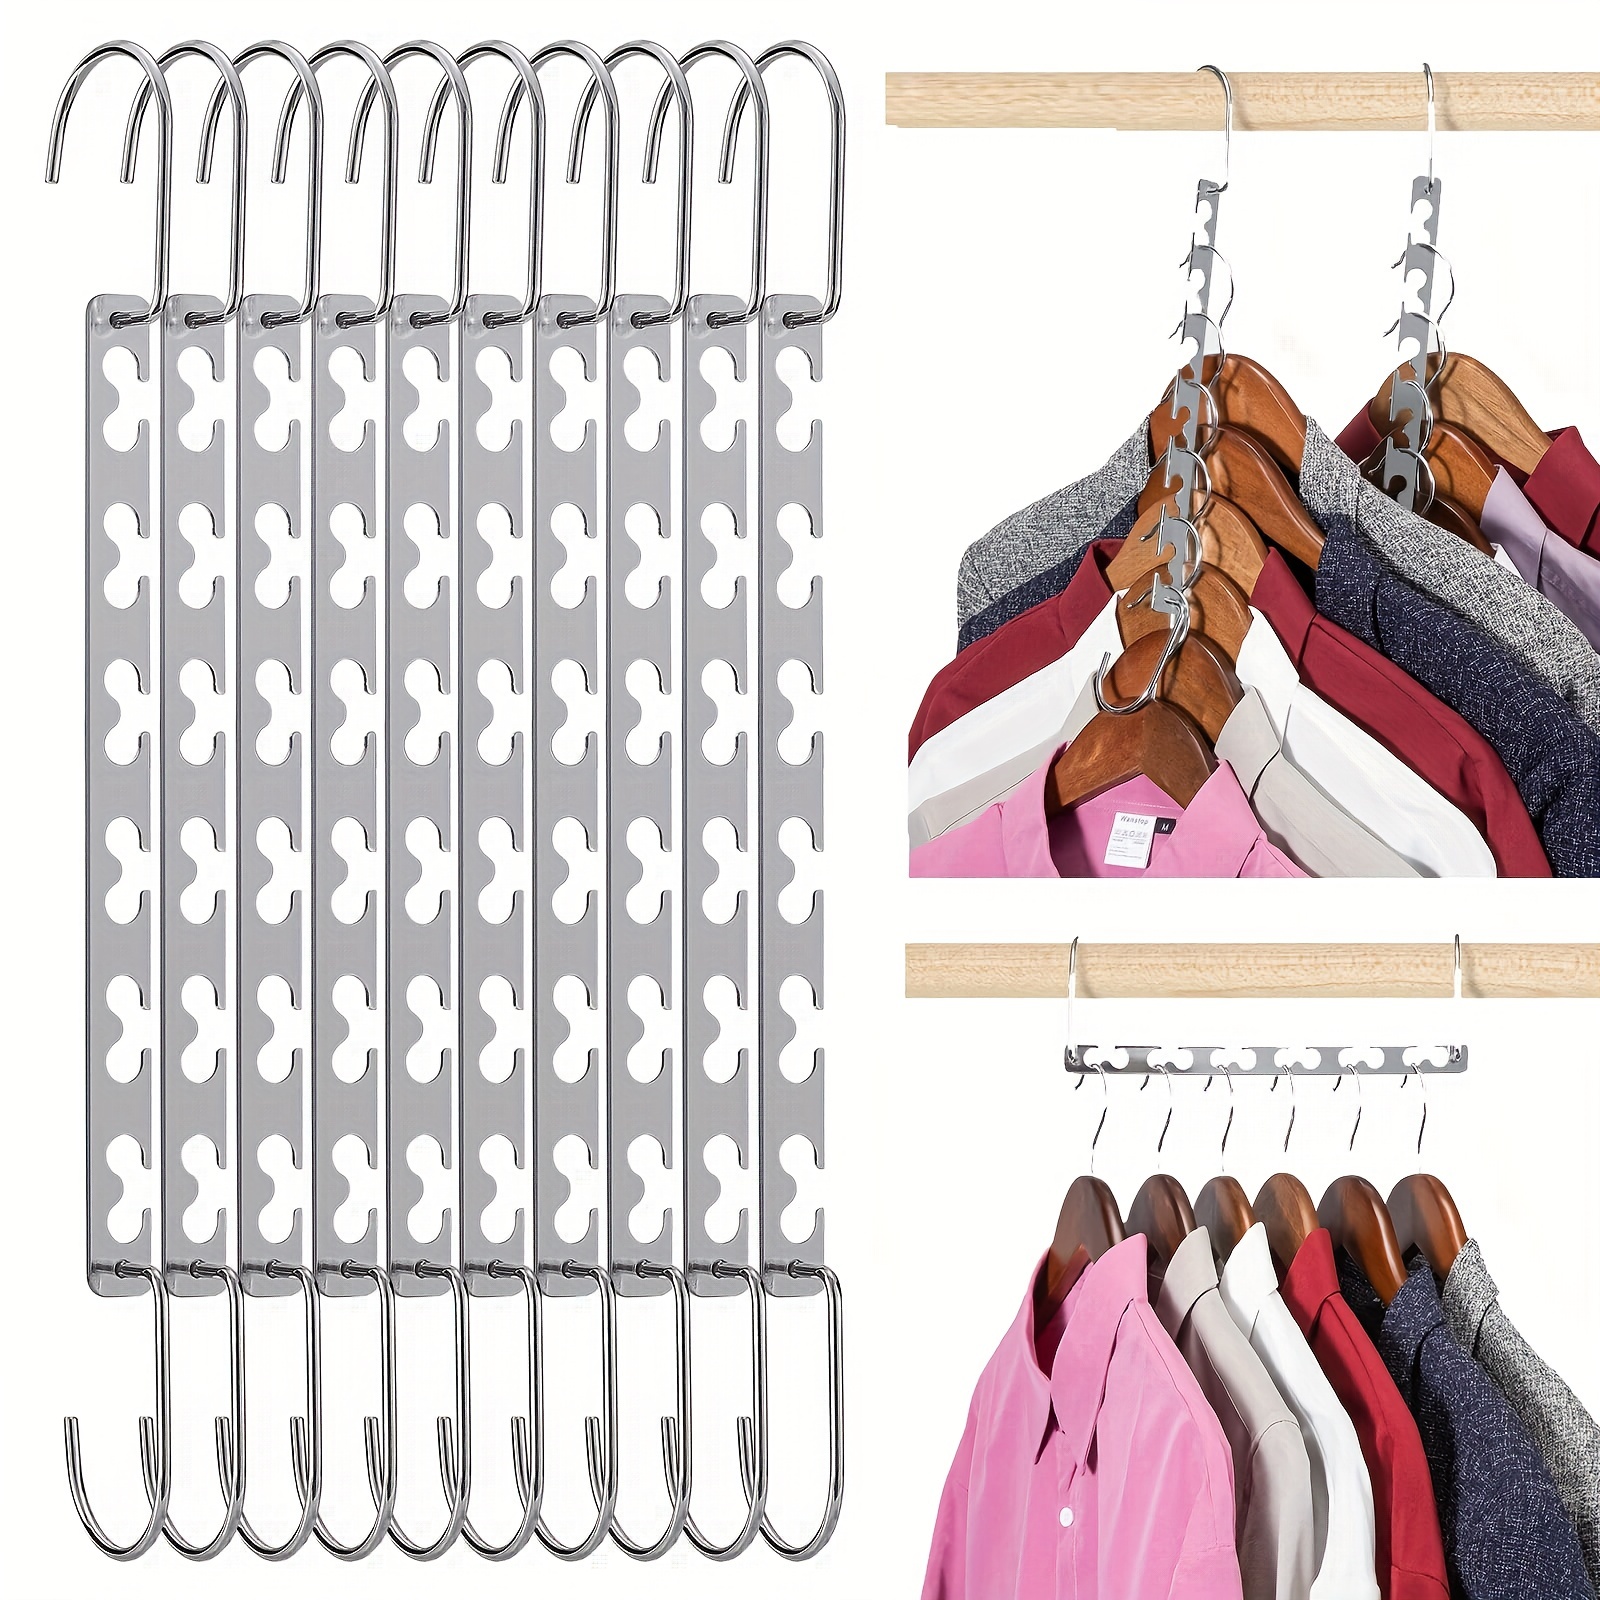 

6/12pcs Stainless Steel Iron Magic Hangers, Closet Organizer Wardrobe Space Saving Hangers, Multifunctional Folding Hangers